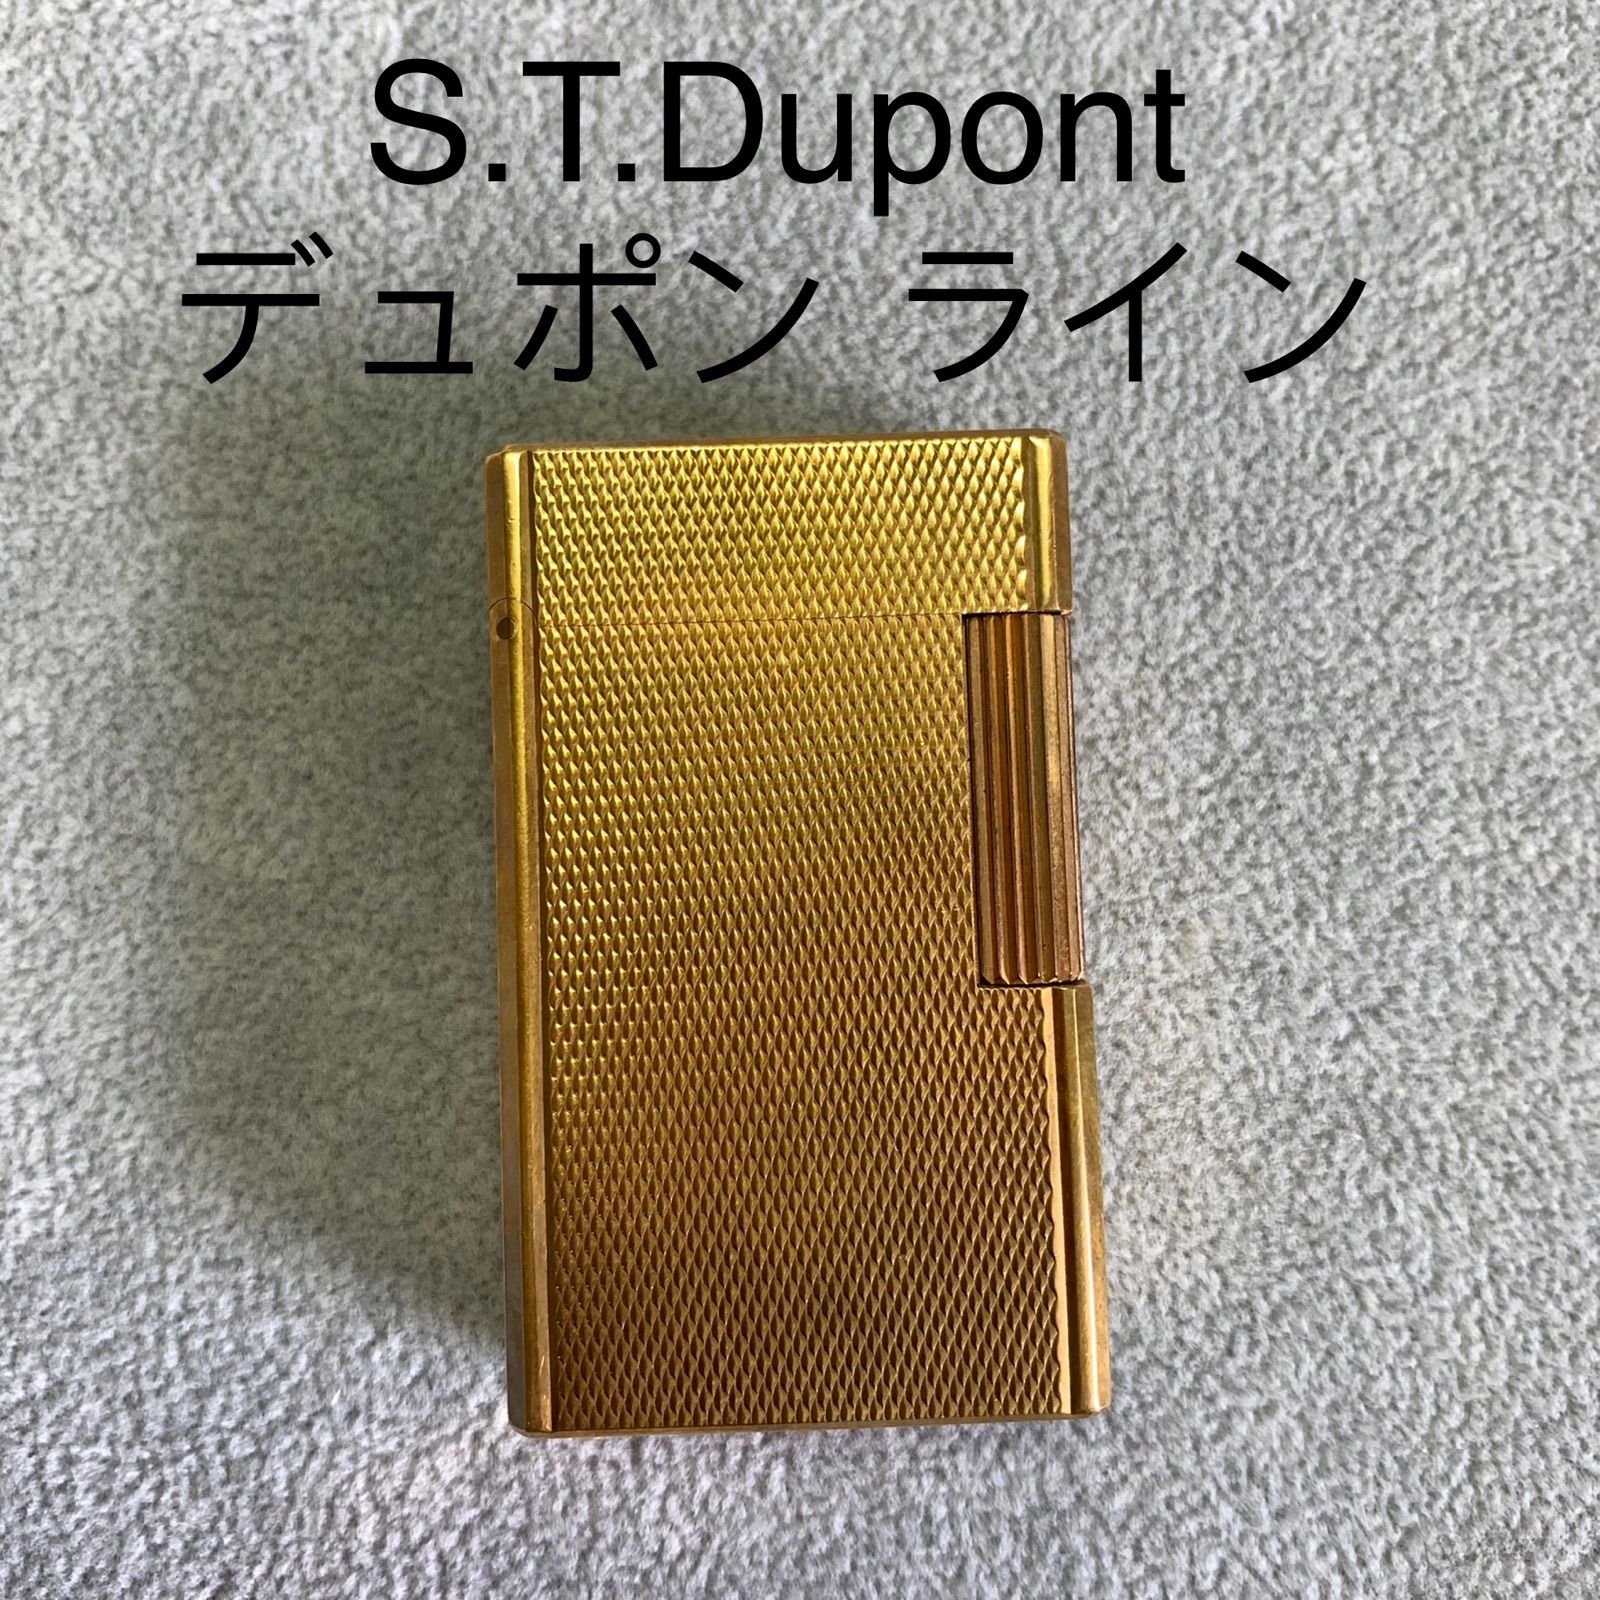 S.T.DUPONTデュポン ライター ゴールド - メルカリ